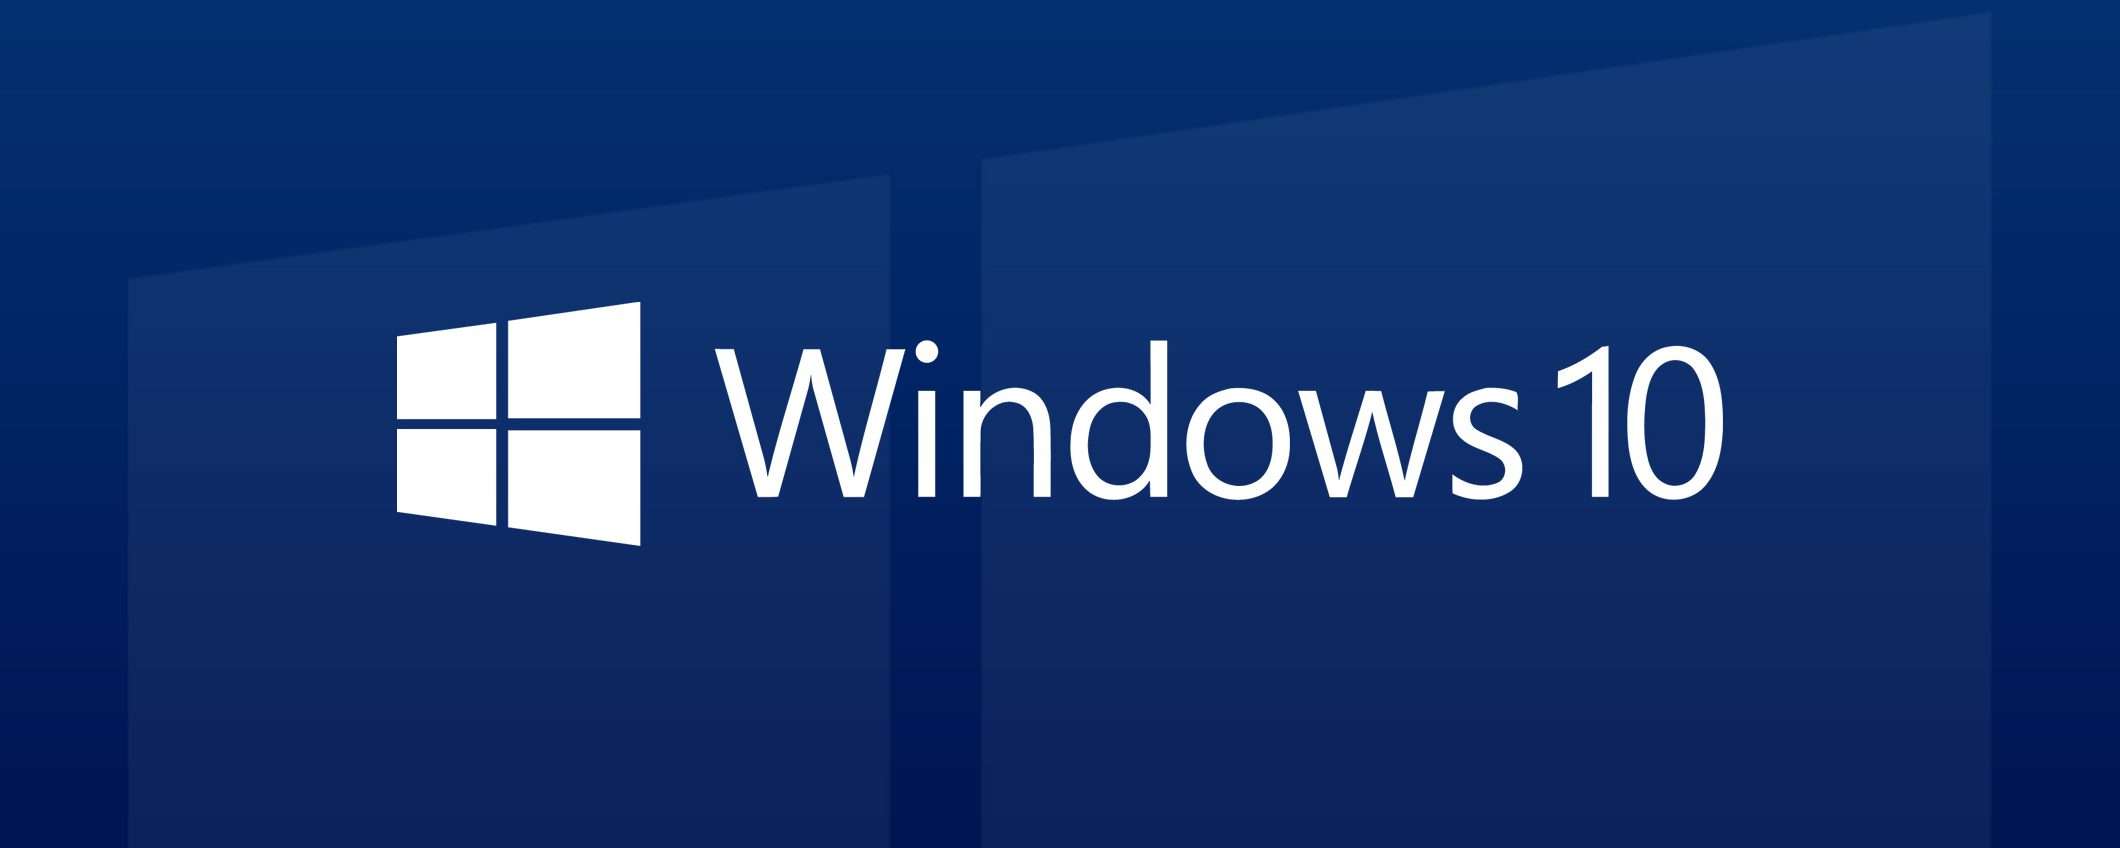 Windows 10: problemi con le app preinstallate